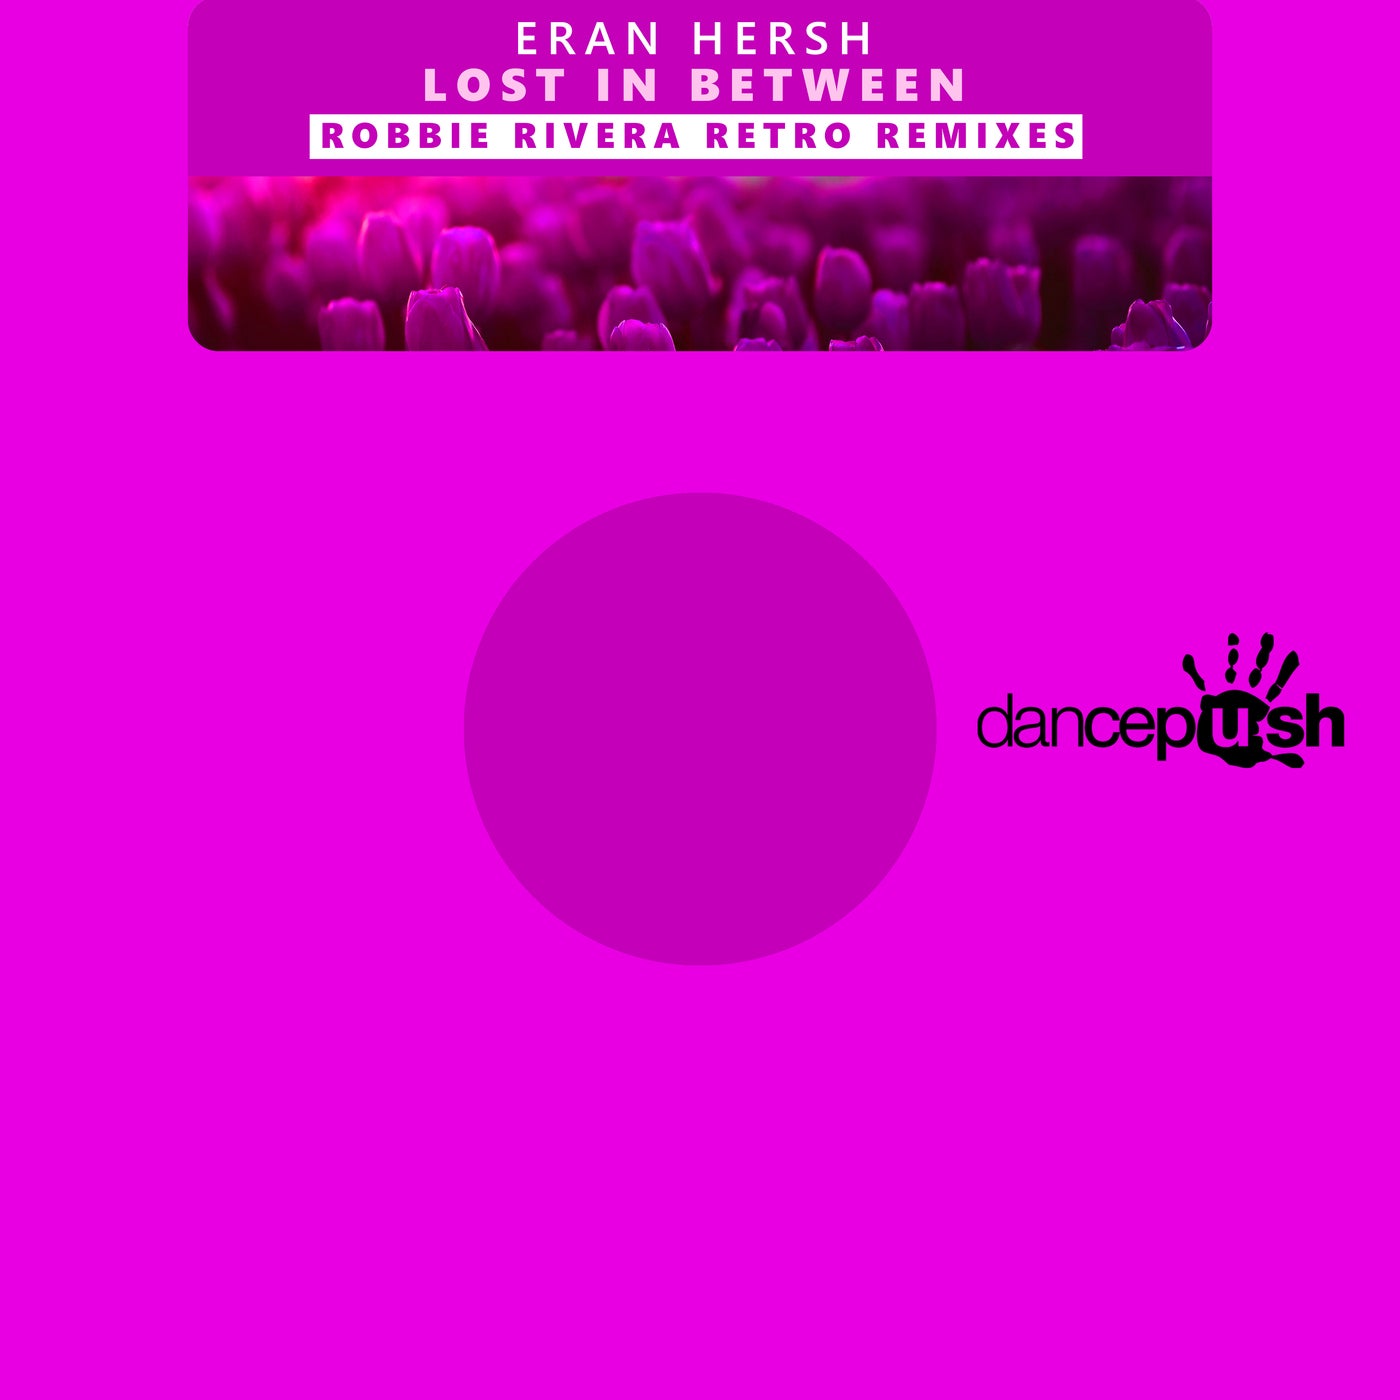 Lost In Between (Robbie Rivera Retro Remixes)